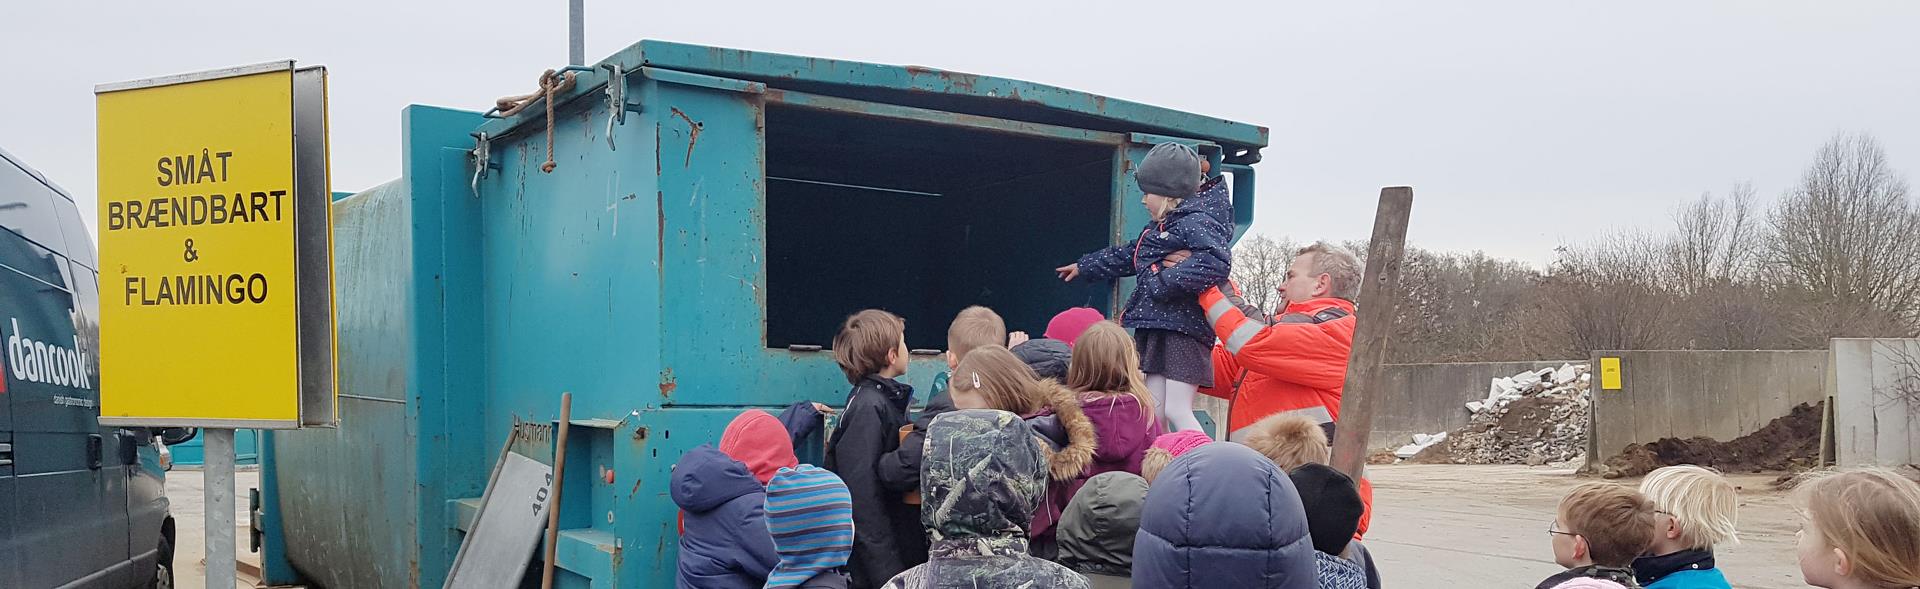 Genbrugsvejleder løfter barn op til container mens andre børn kigger på